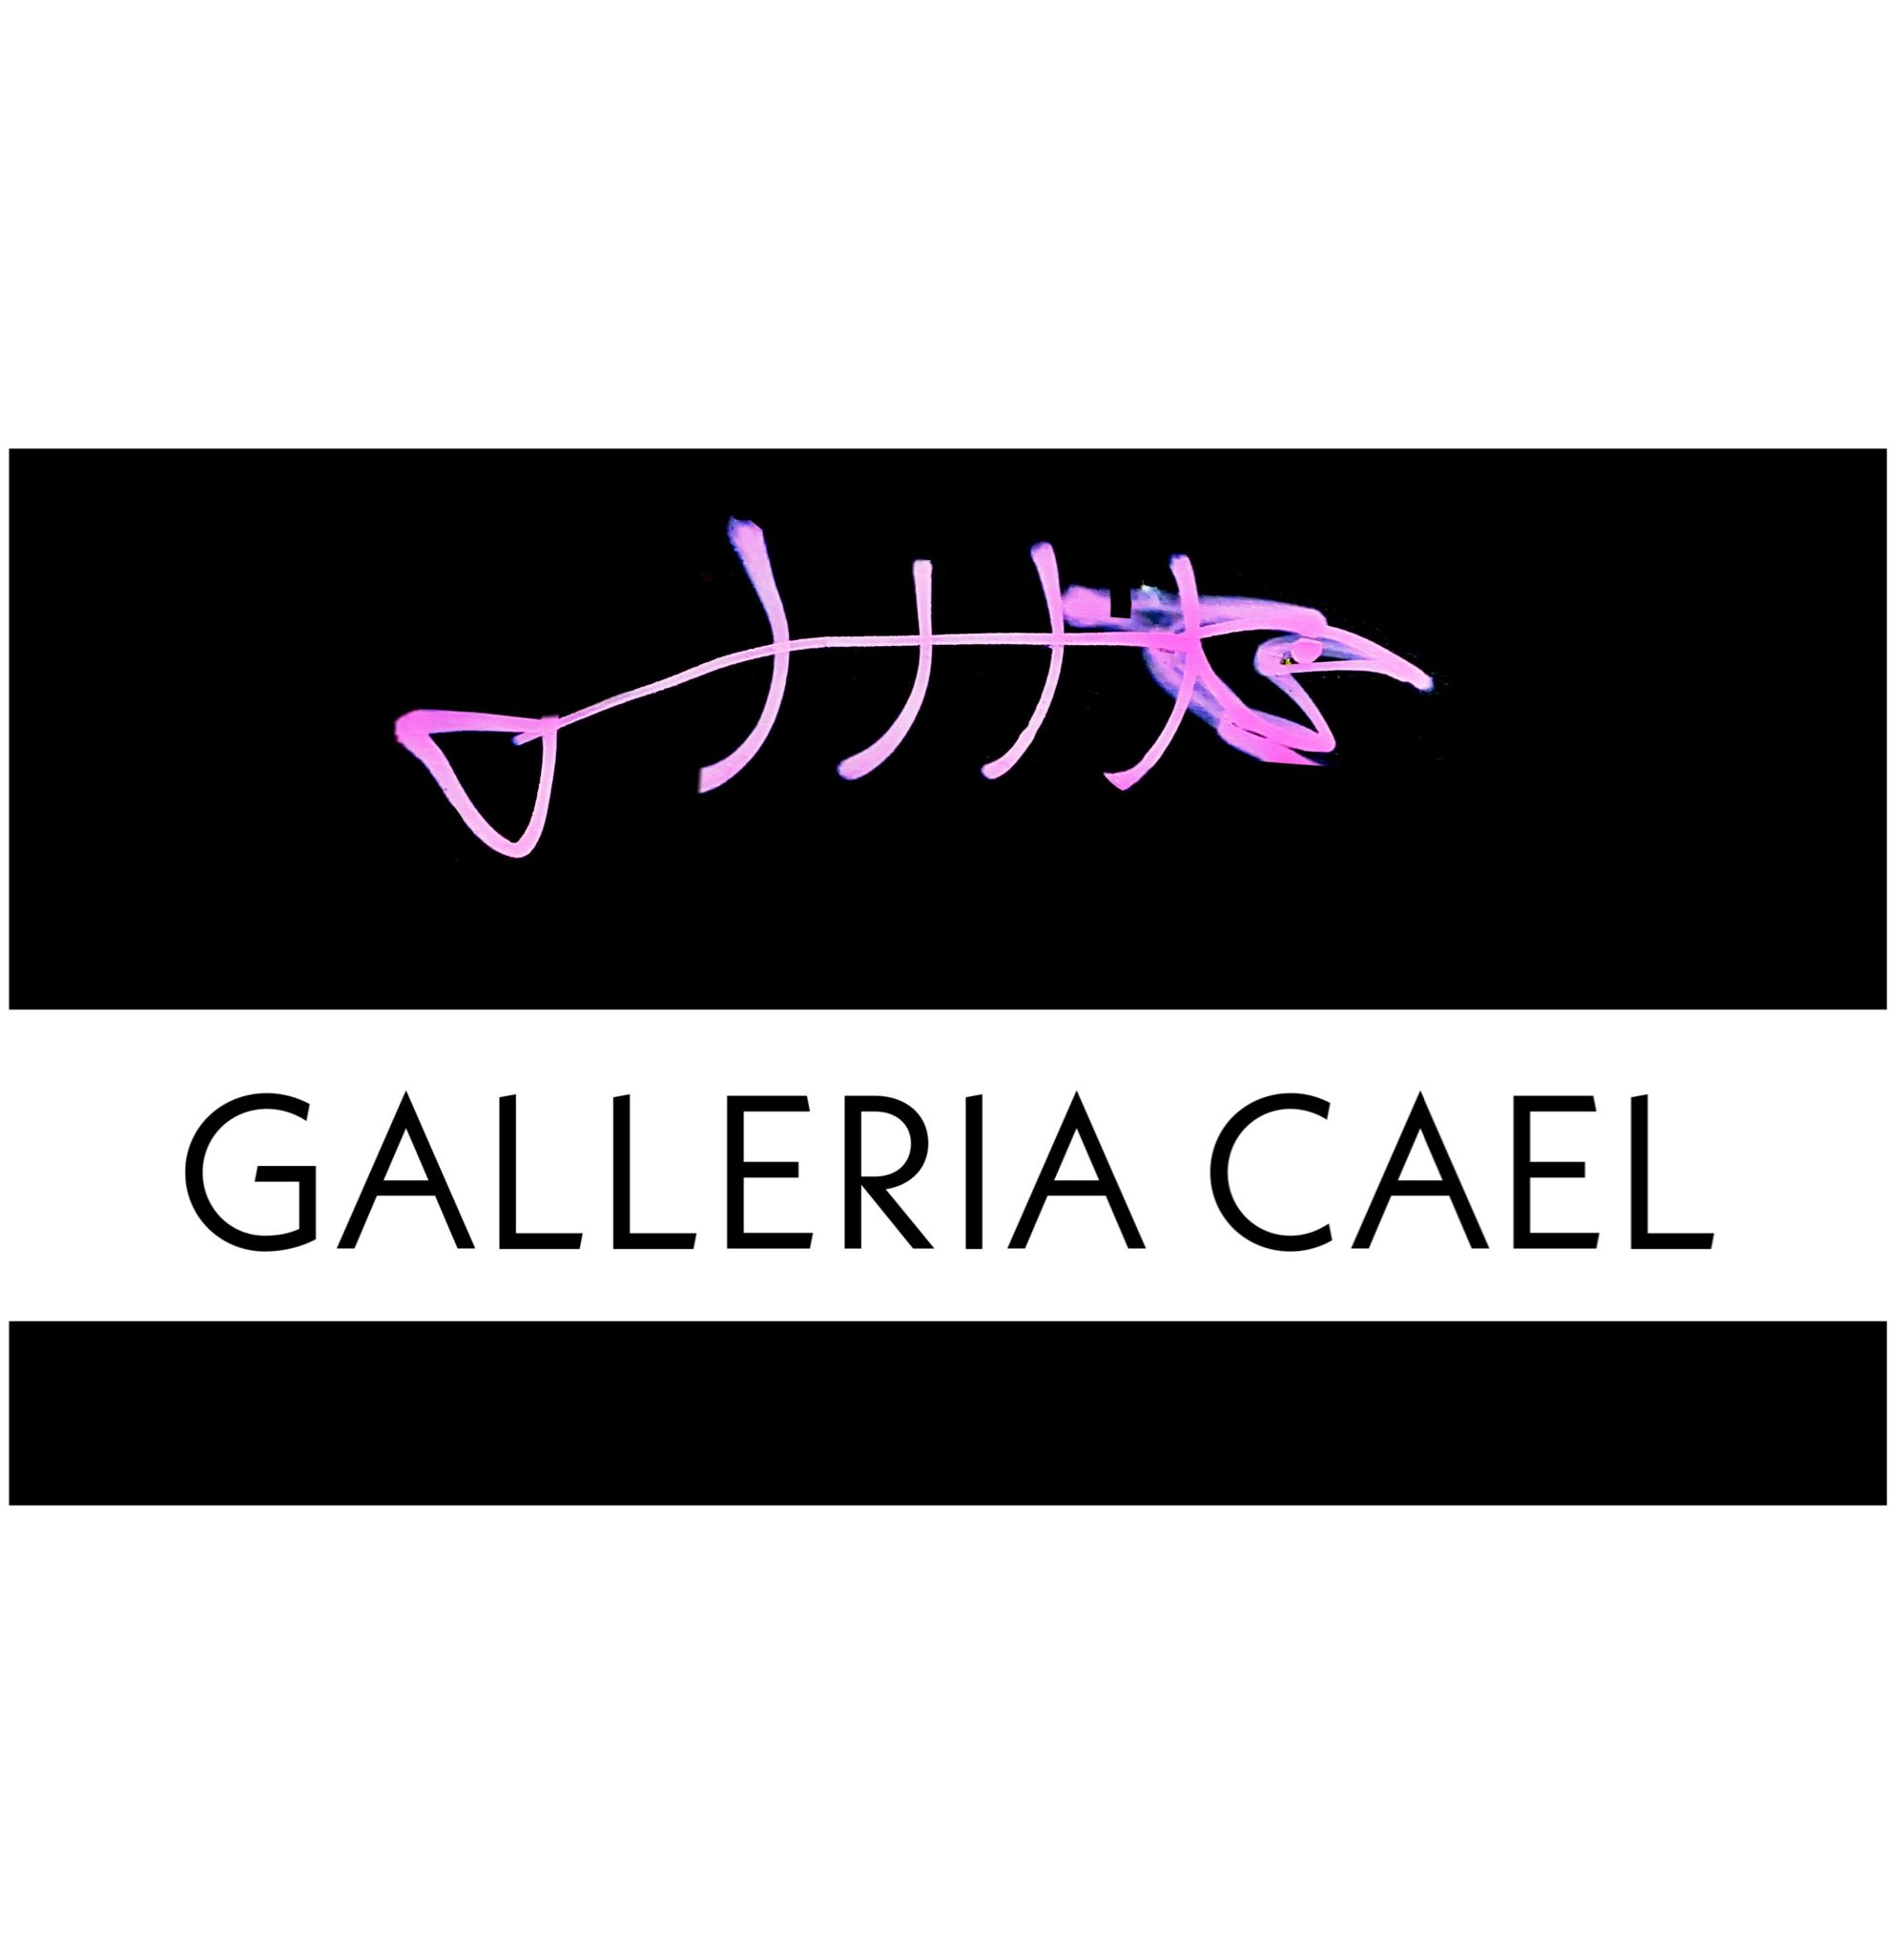 GALLERIA CAEL